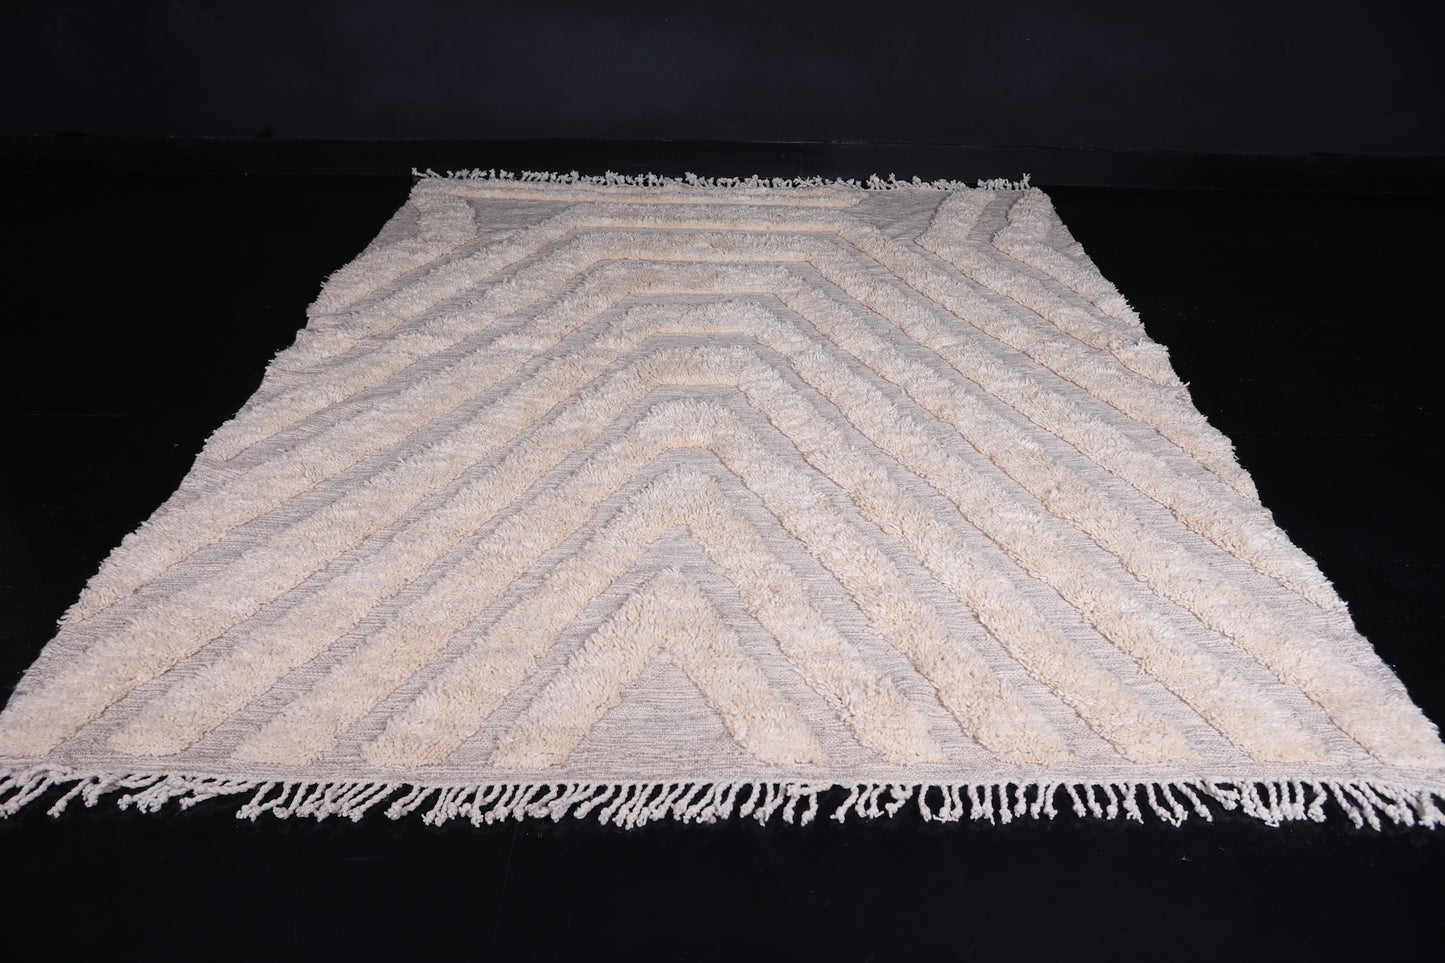 Moroccan handmade rug 7.8 X 10 Feet